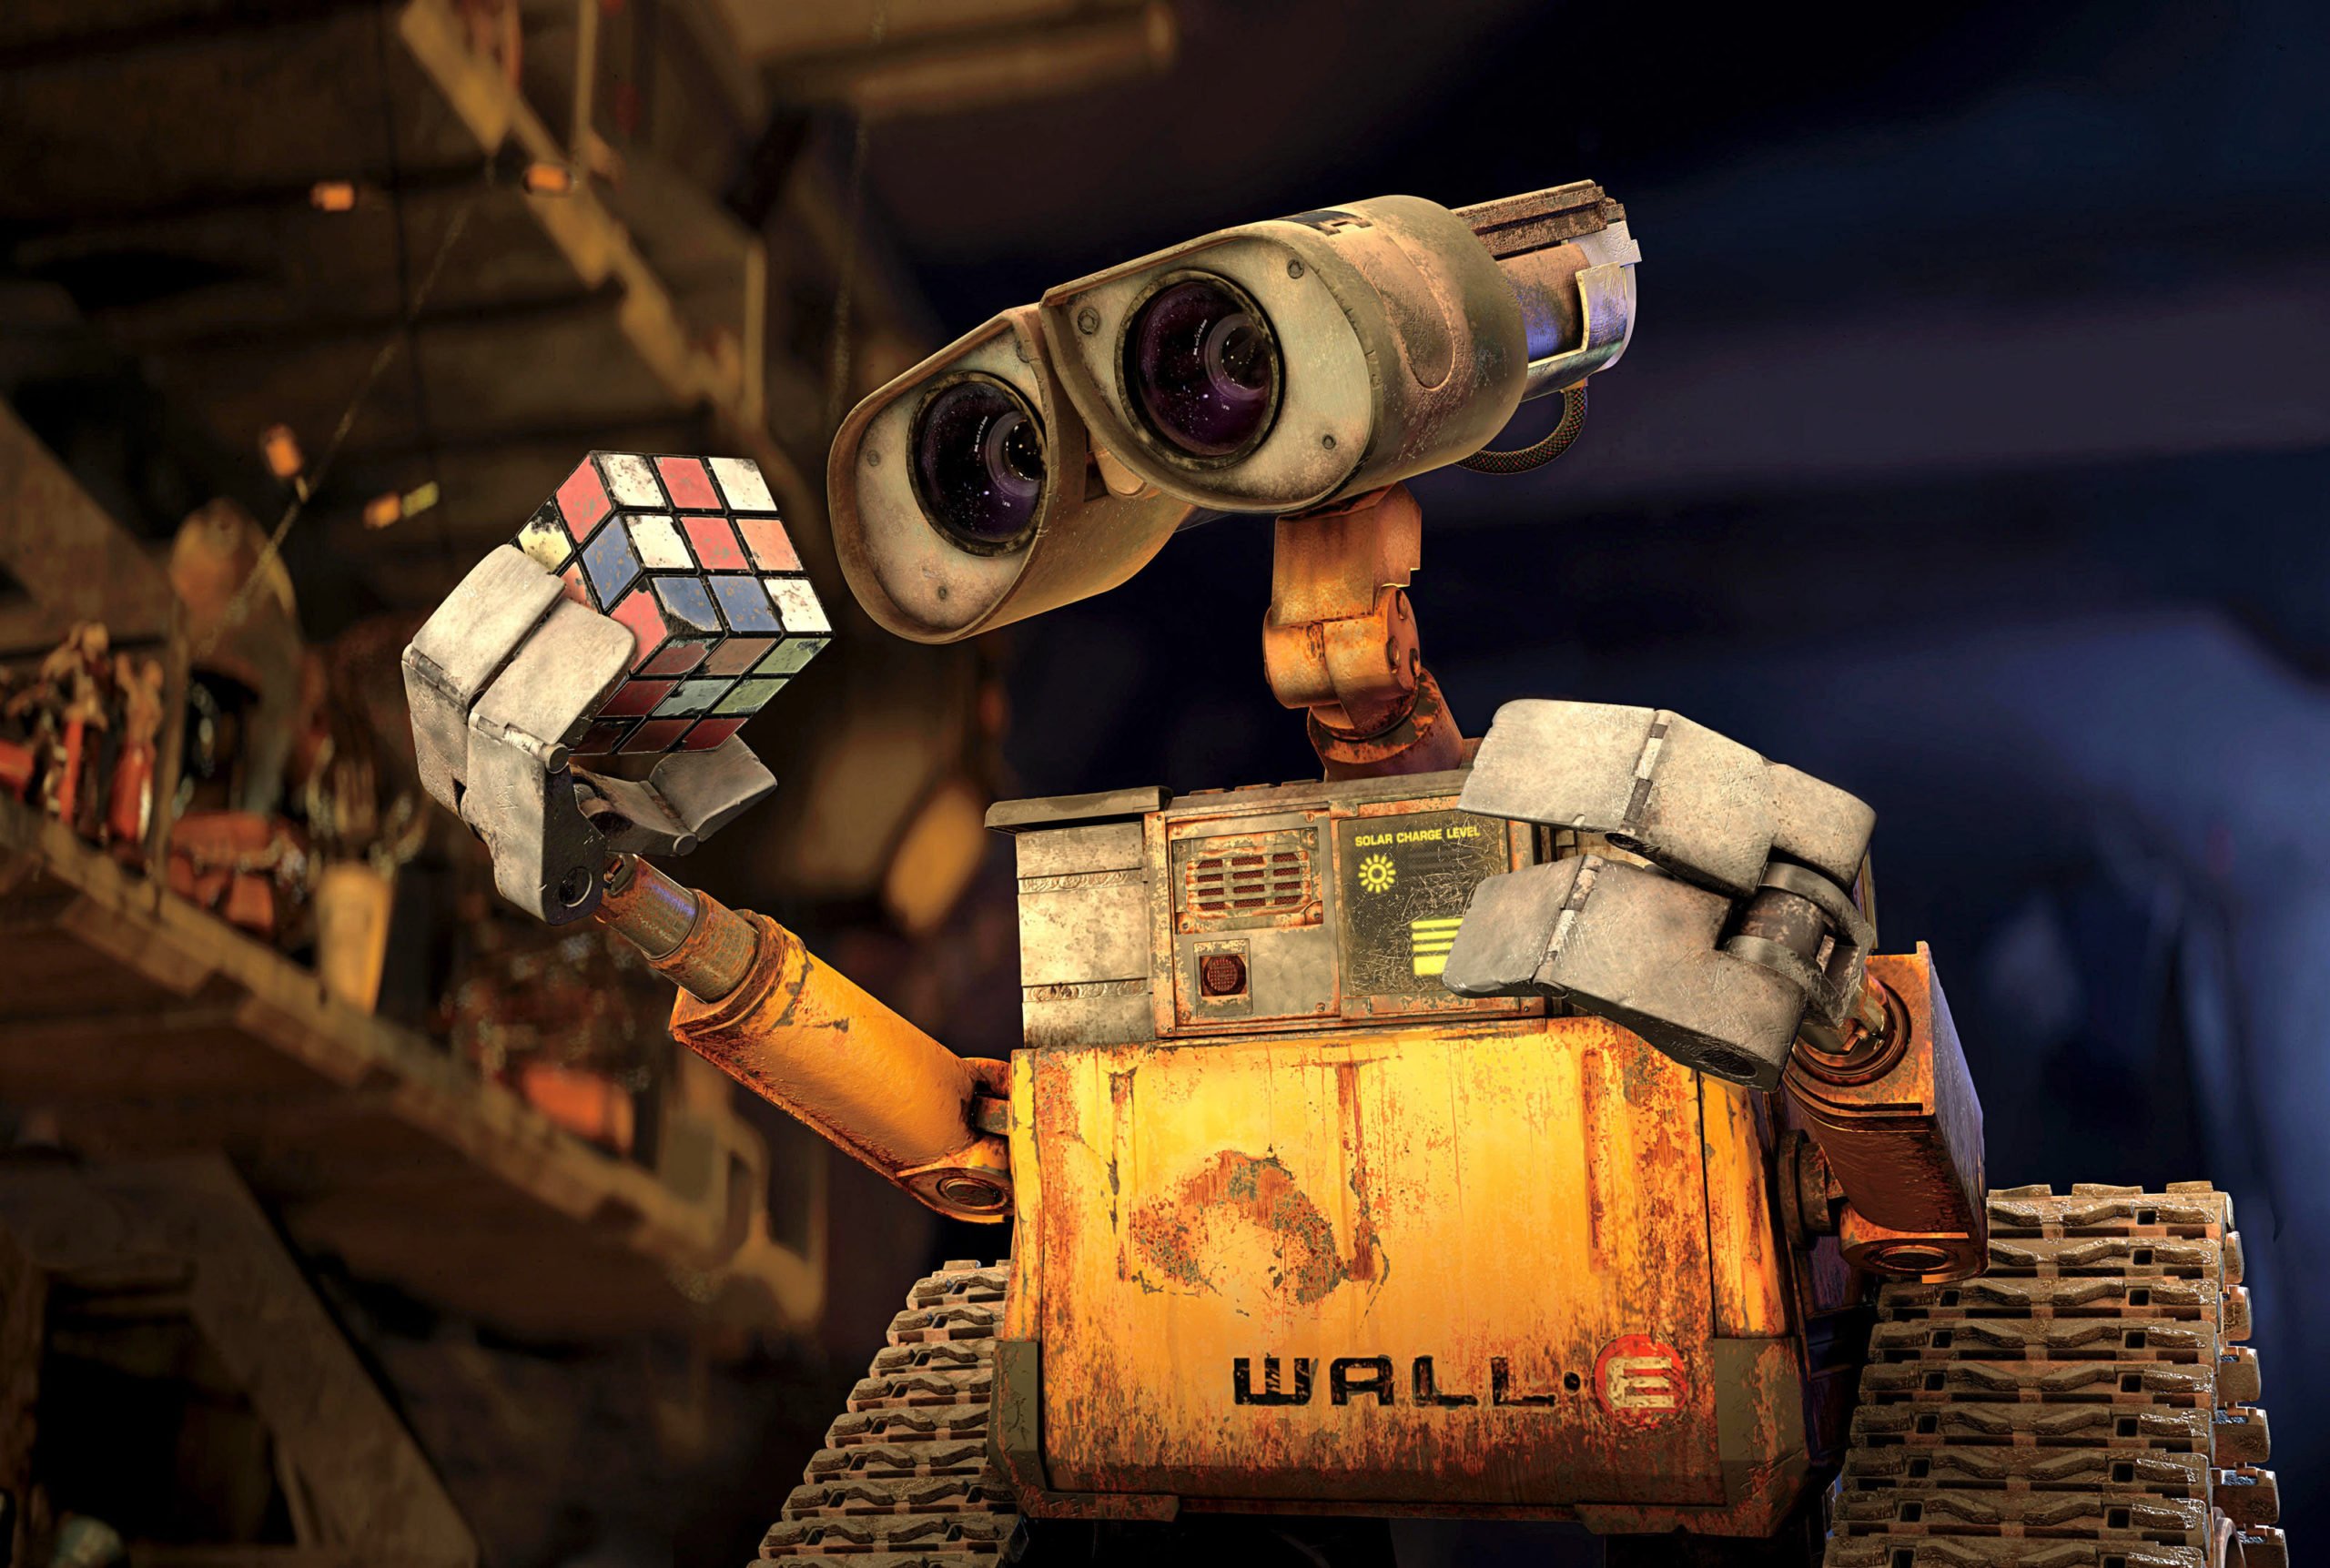 кадр из фильма про робота